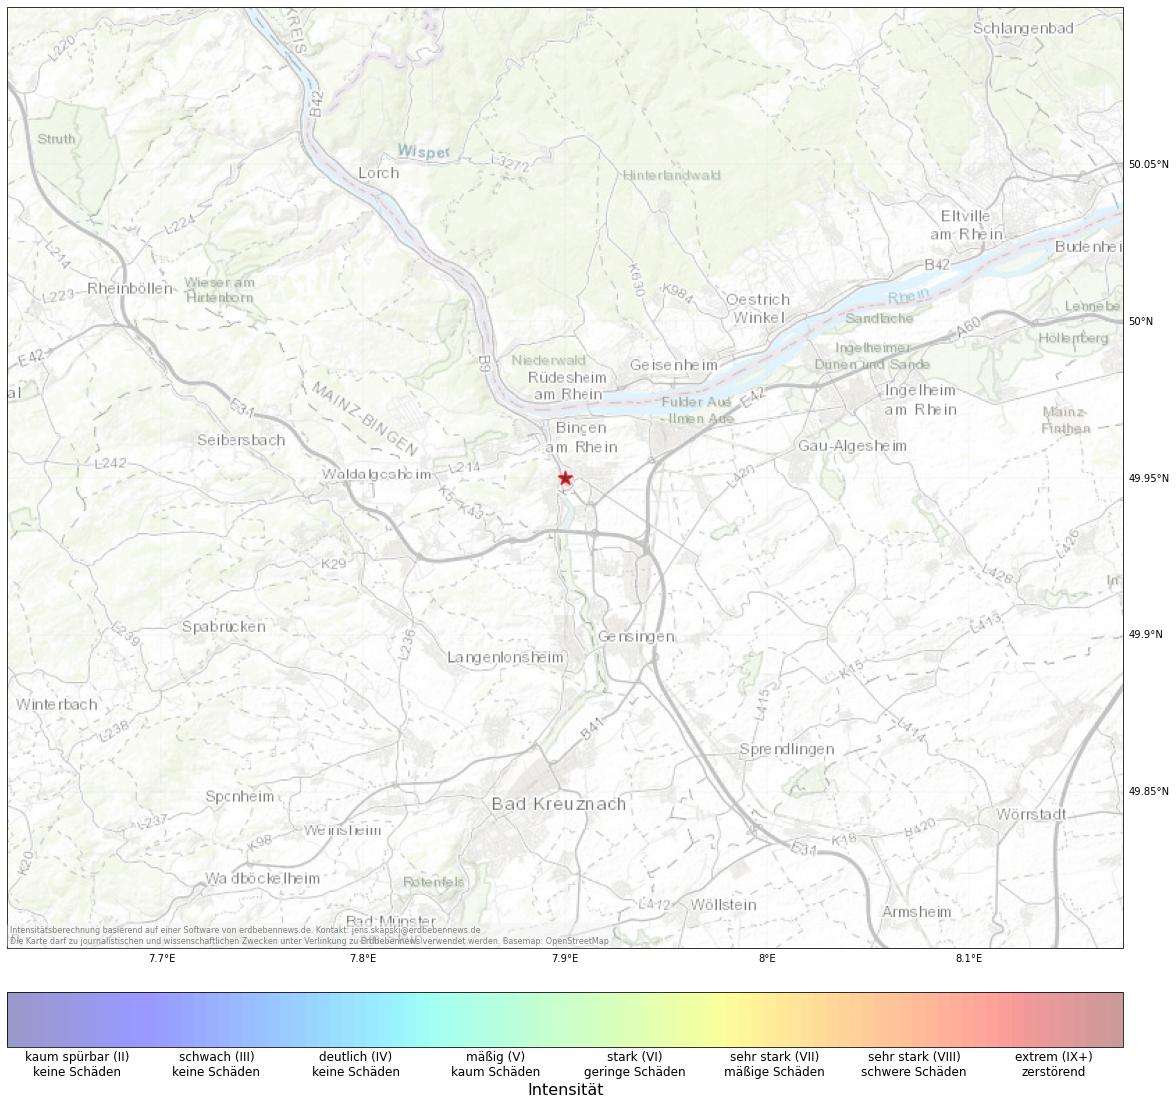 Berechnete Intensität (ShakeMap) des Erdbebens der Stärke 1.3 am 14. December, 17:51 in Deutschland